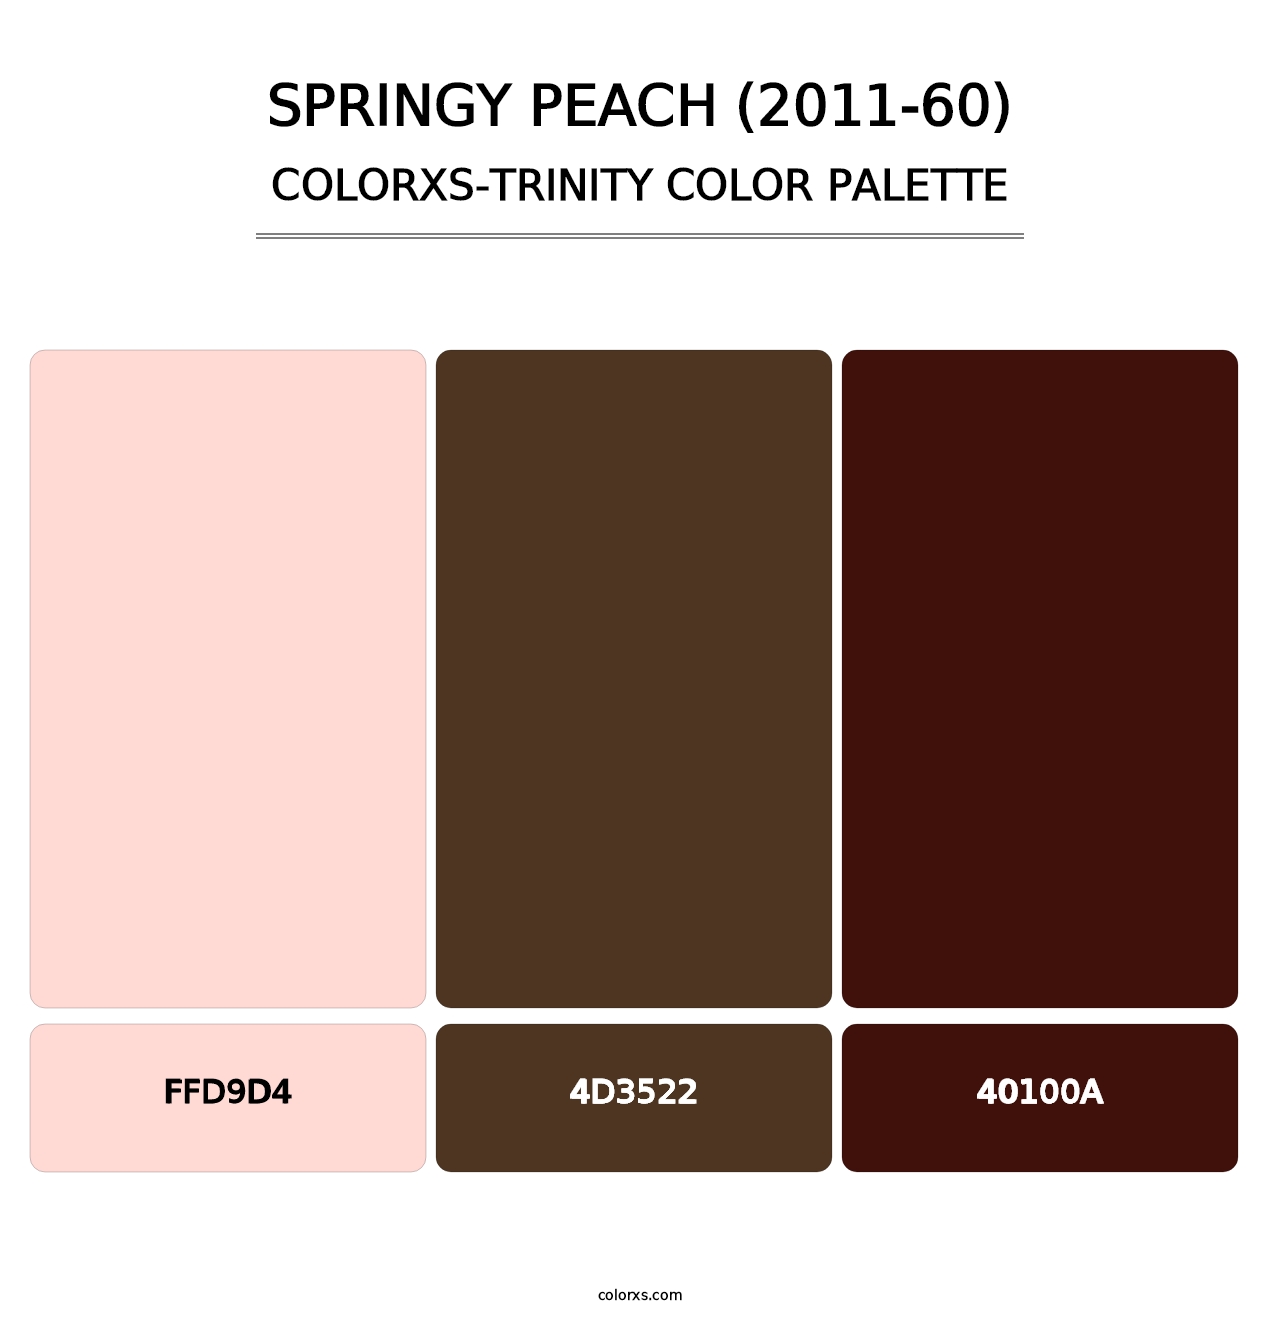 Springy Peach (2011-60) - Colorxs Trinity Palette